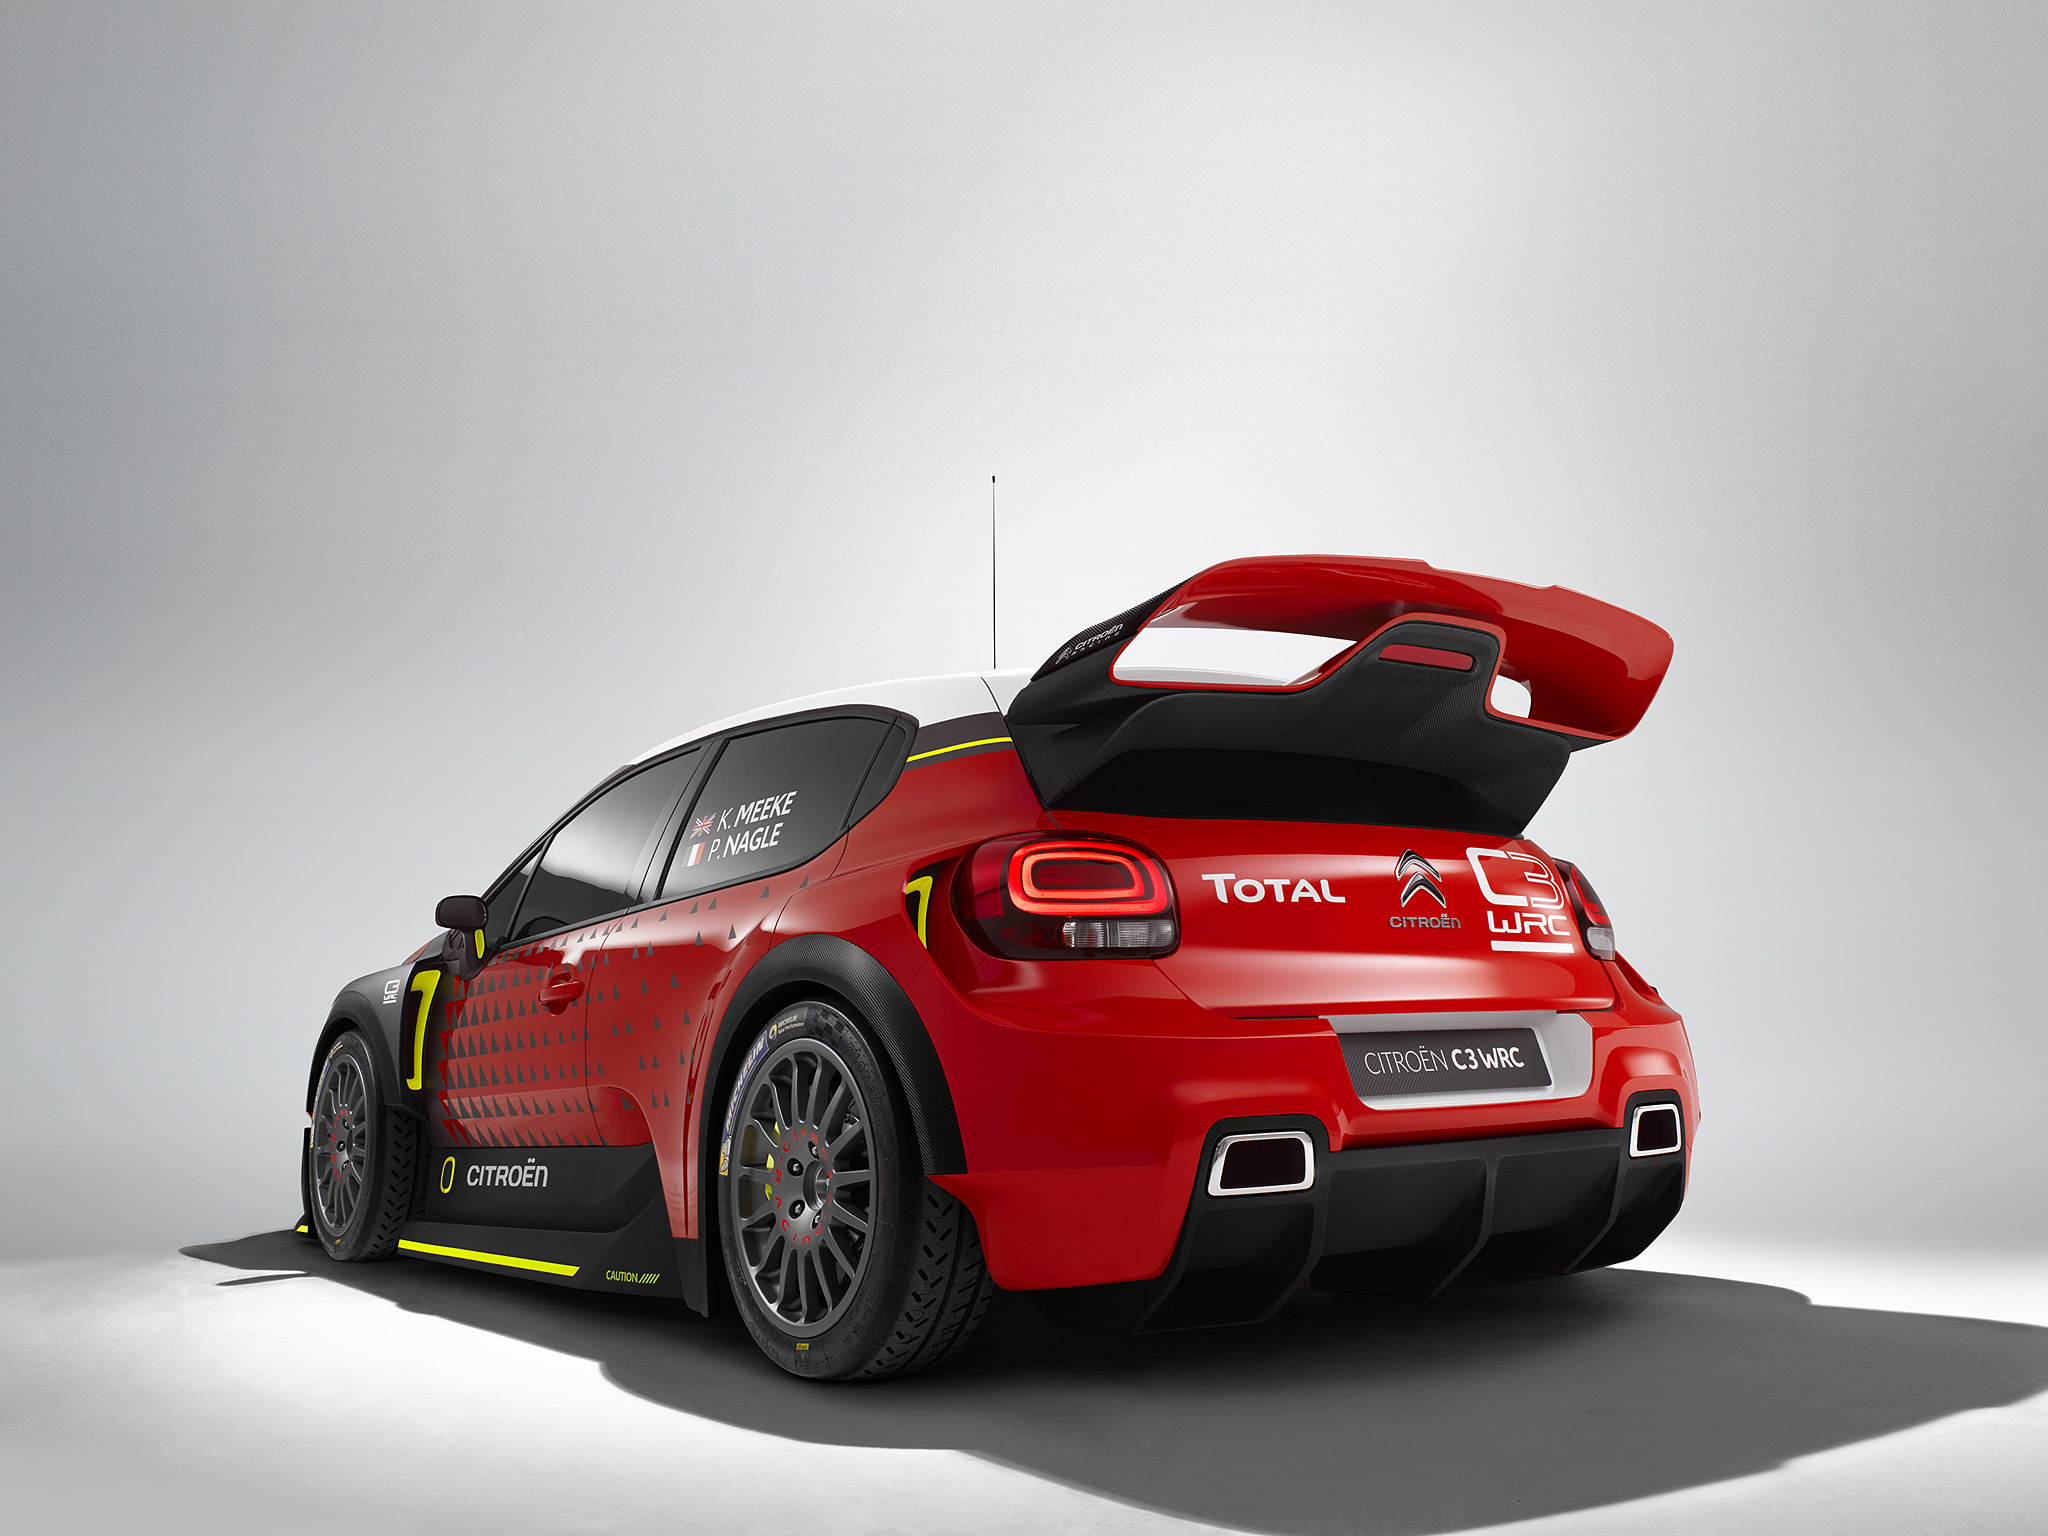  2016 Citroen C3 WRC Concept Wallpaper.